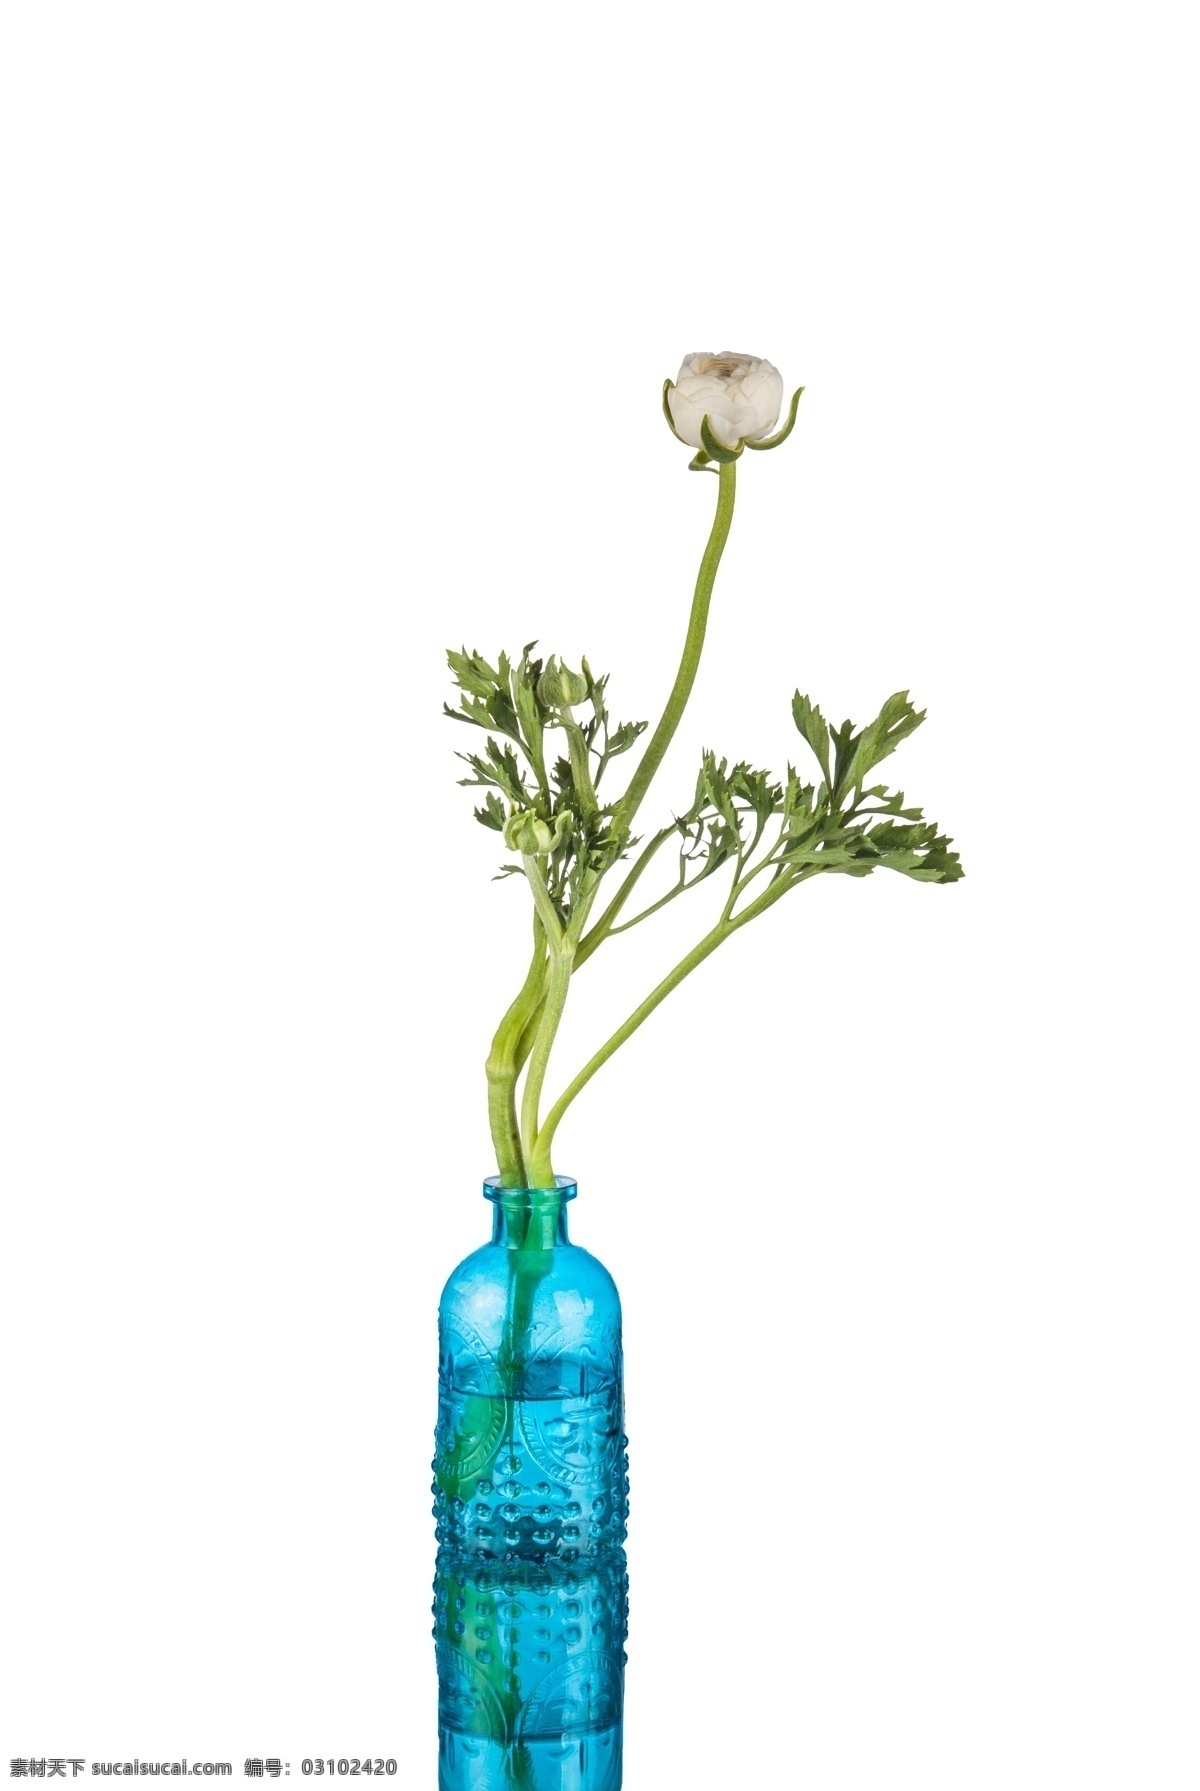 蓝色 花瓶 器皿 花 静物 花卉 产品实物 盆栽 家居 生活 文艺 小清新 唯美